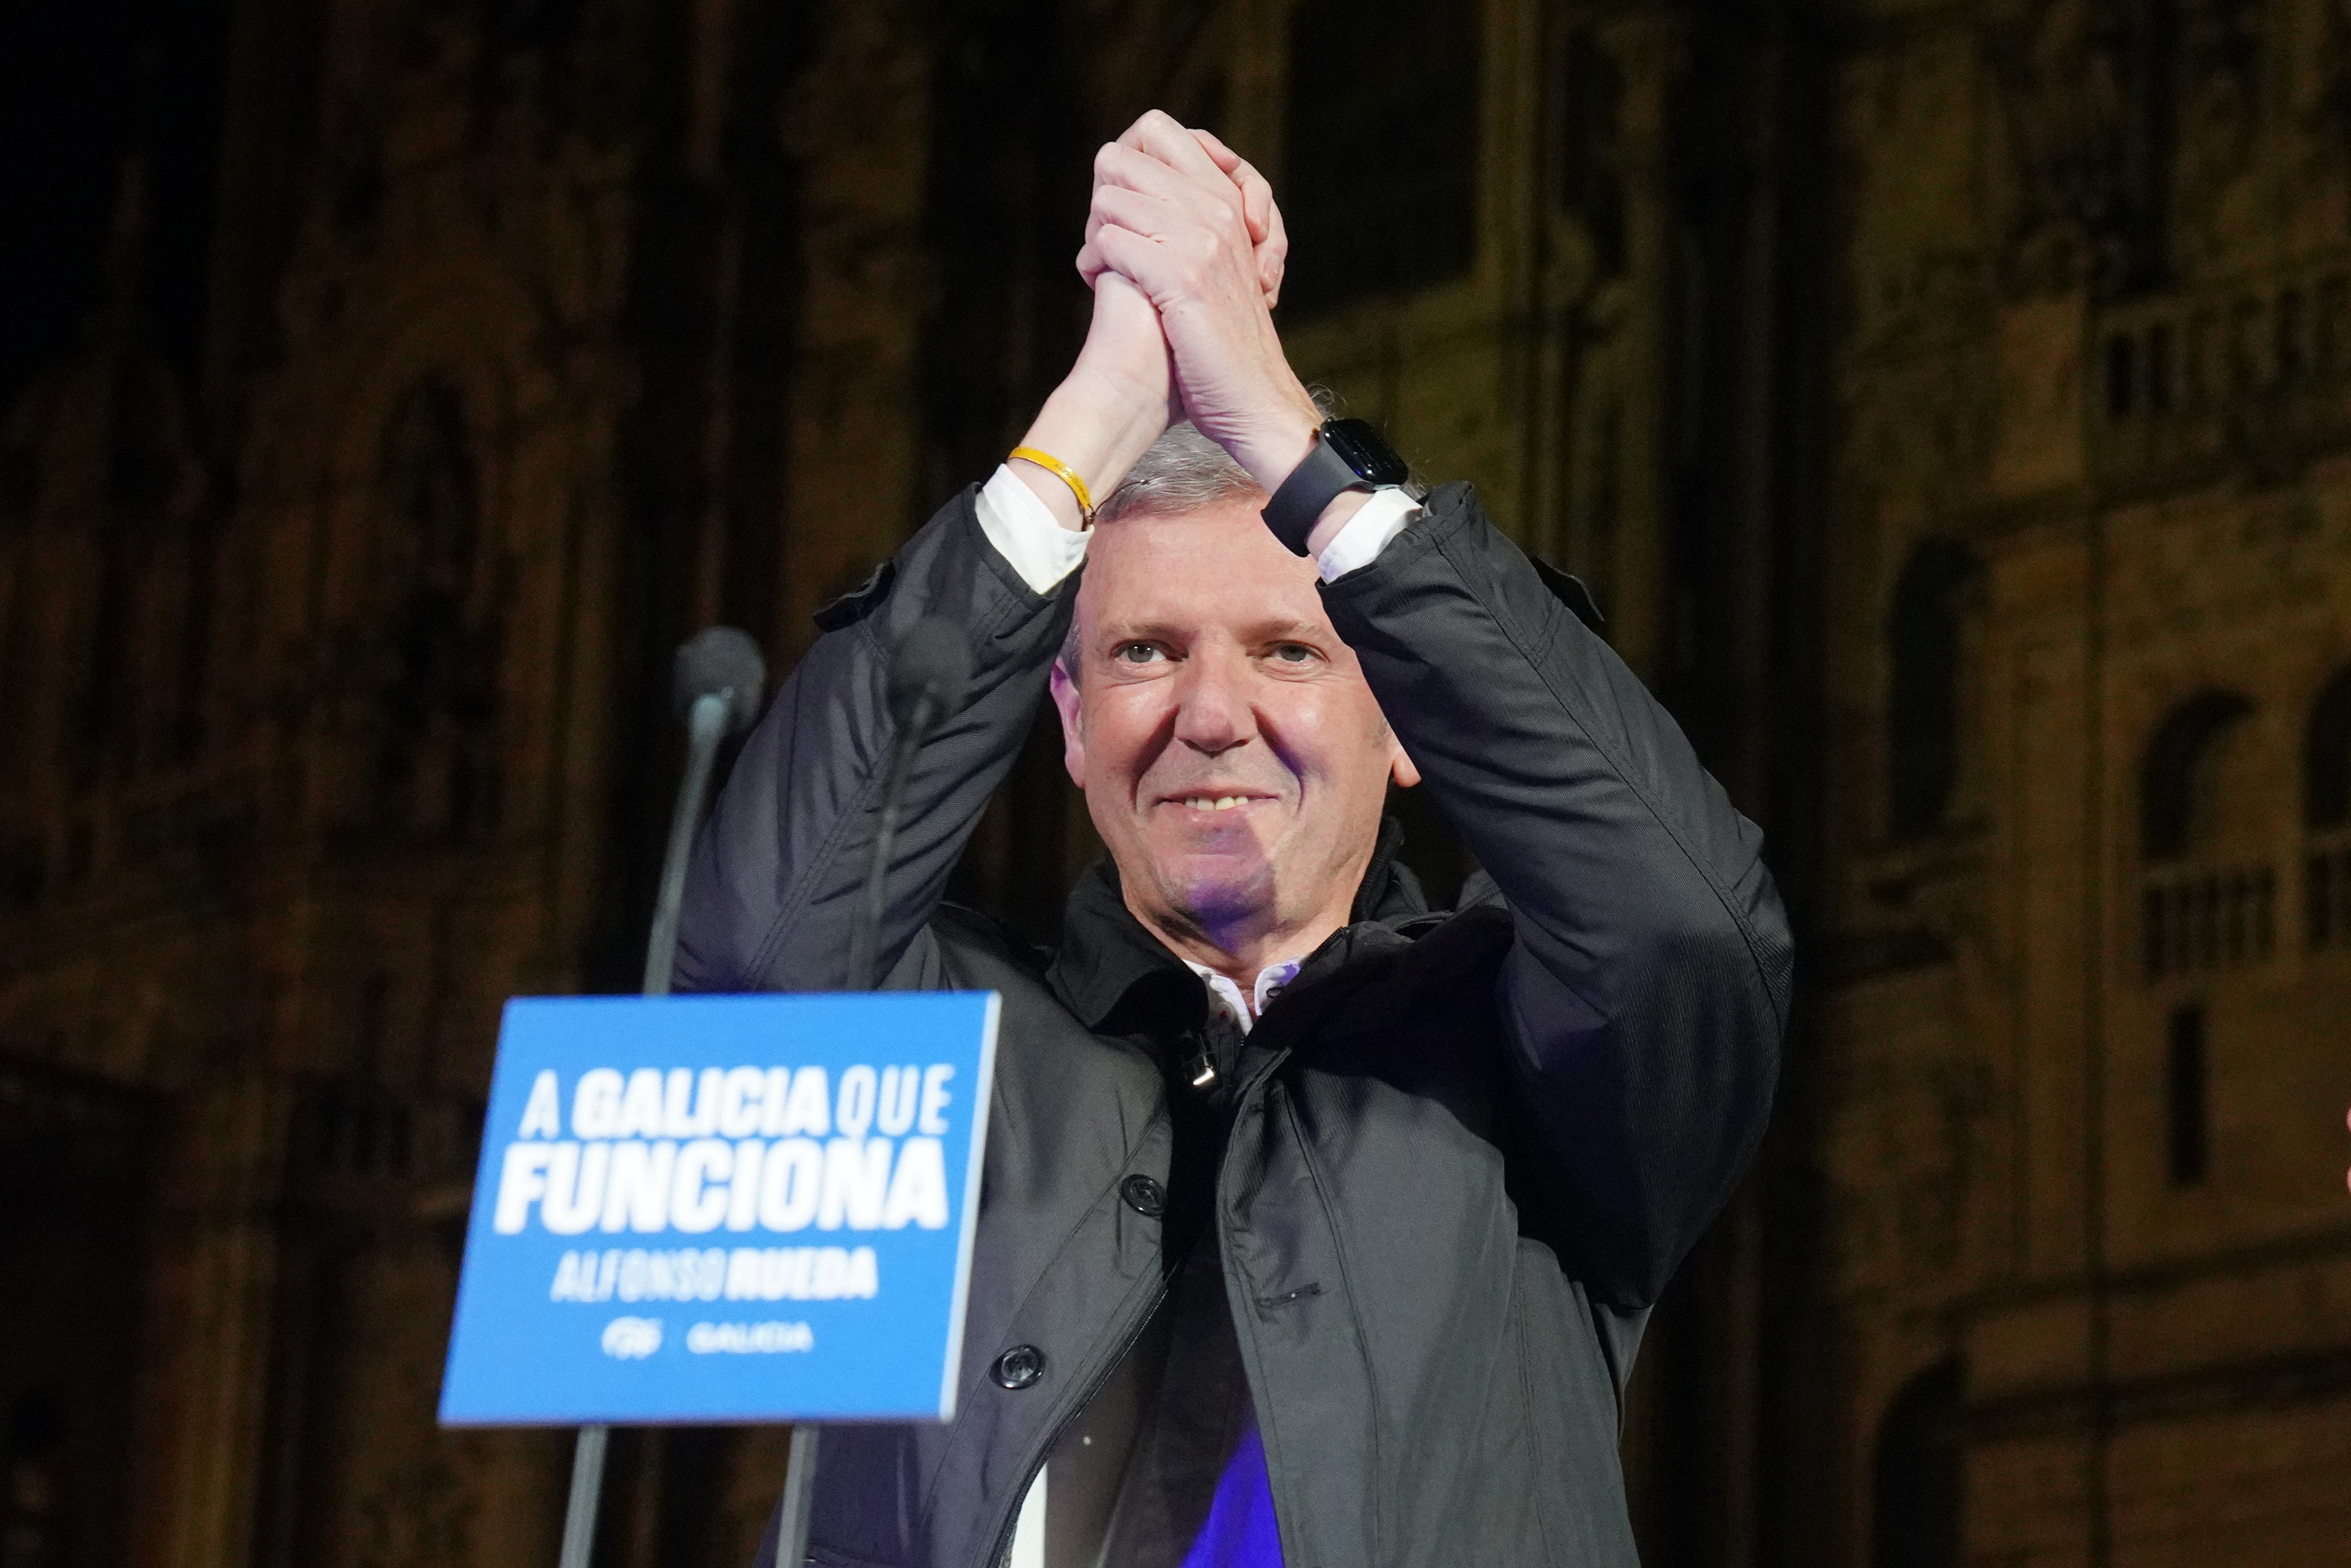 El PP conserva la mayoría absoluta en Galicia, según una encuesta